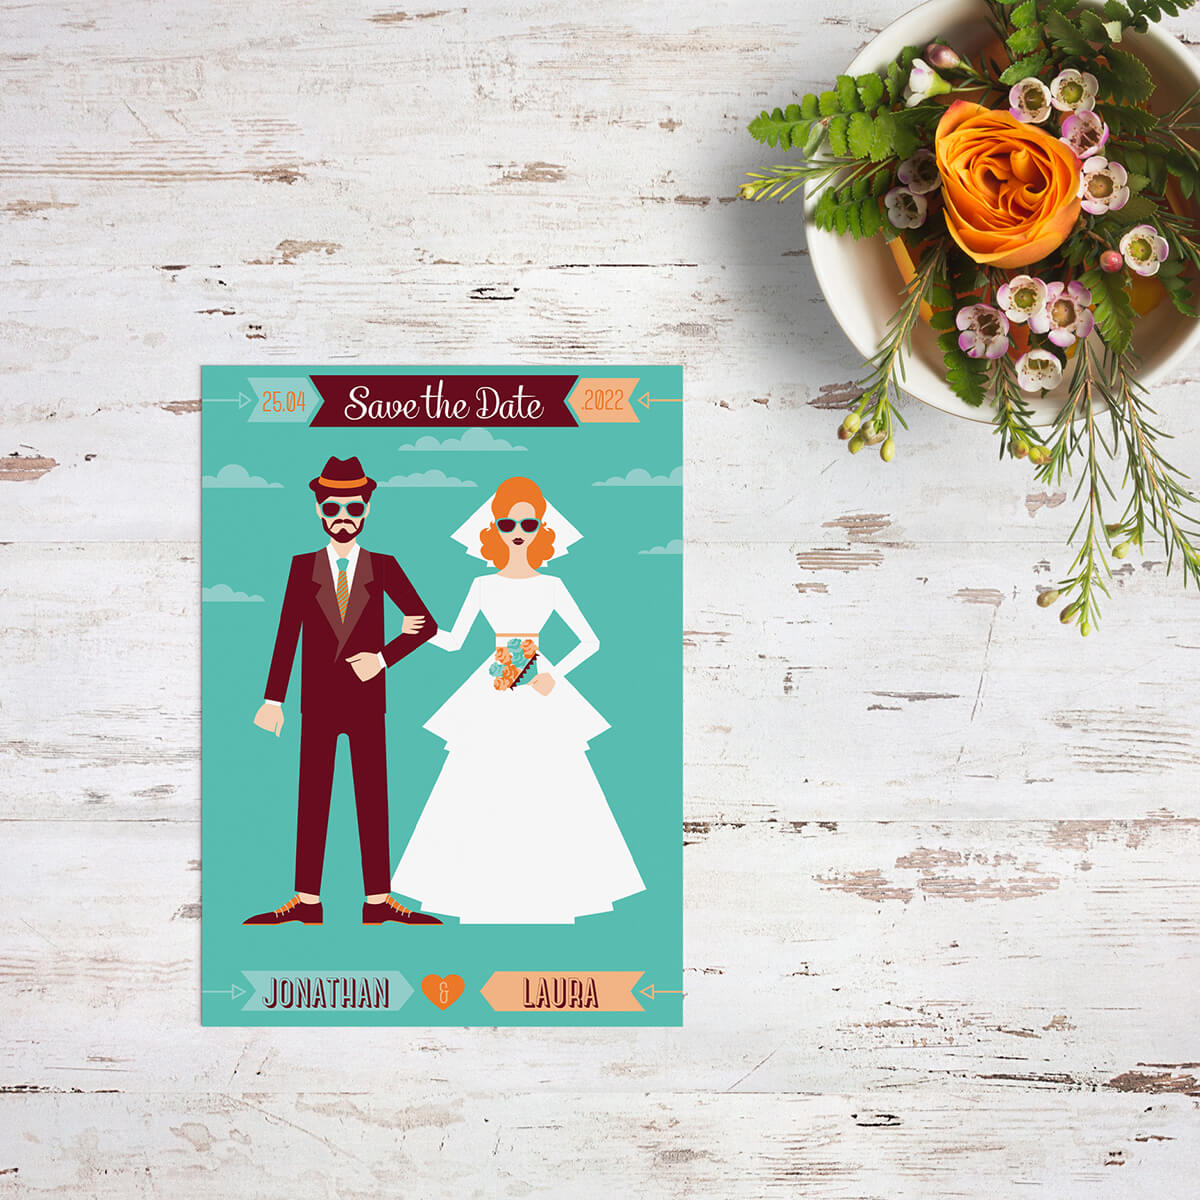 Save the date kaart Retro Hipster Bruidspaar is een ultiem statement: über retro, vrolijke kleuren en bruidspaar figuren ontworpen met een dikke knipoog.